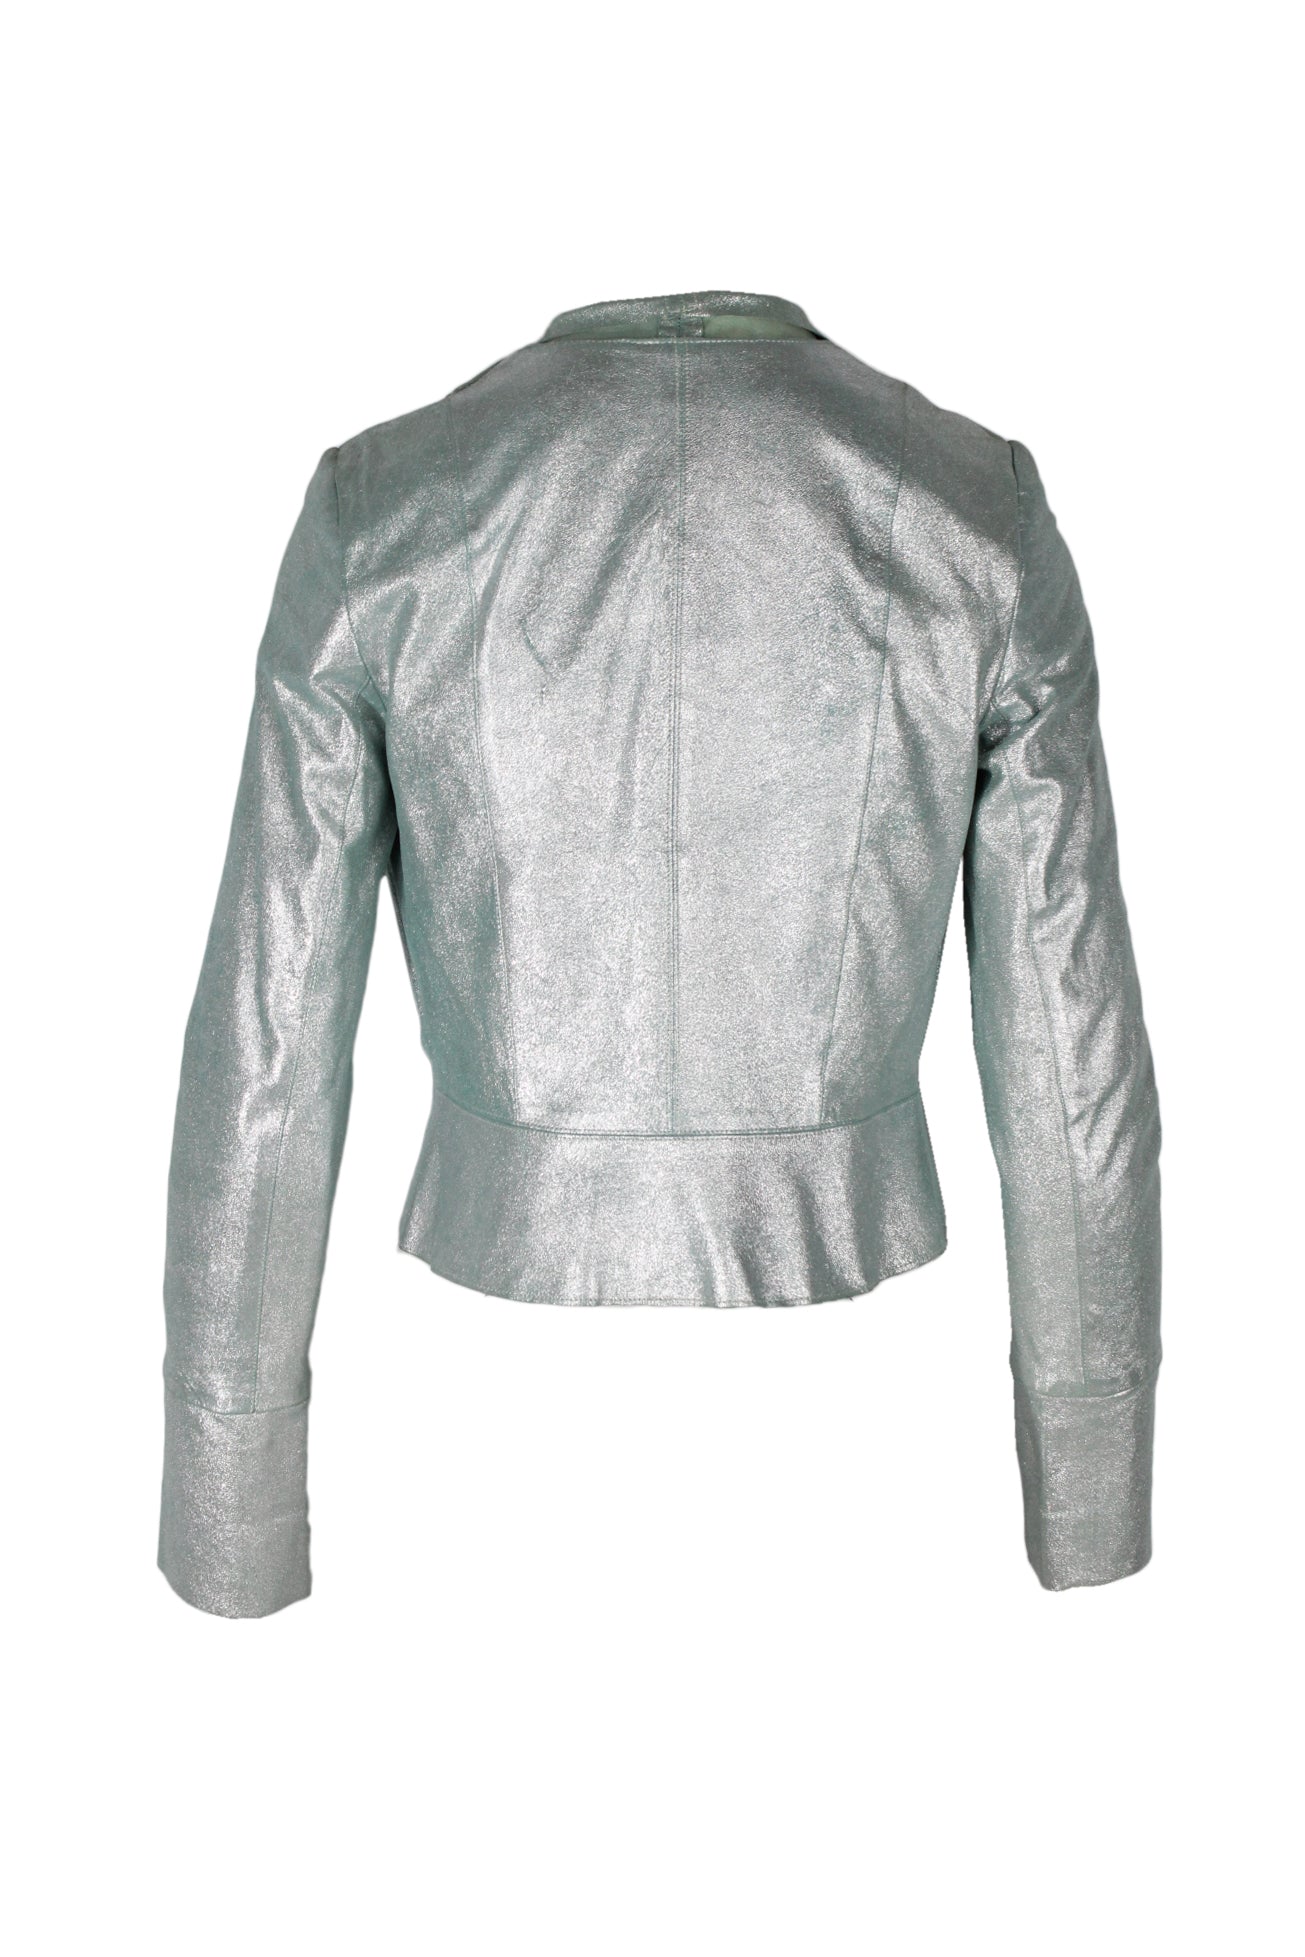 back of jacket with tonal stitching. 